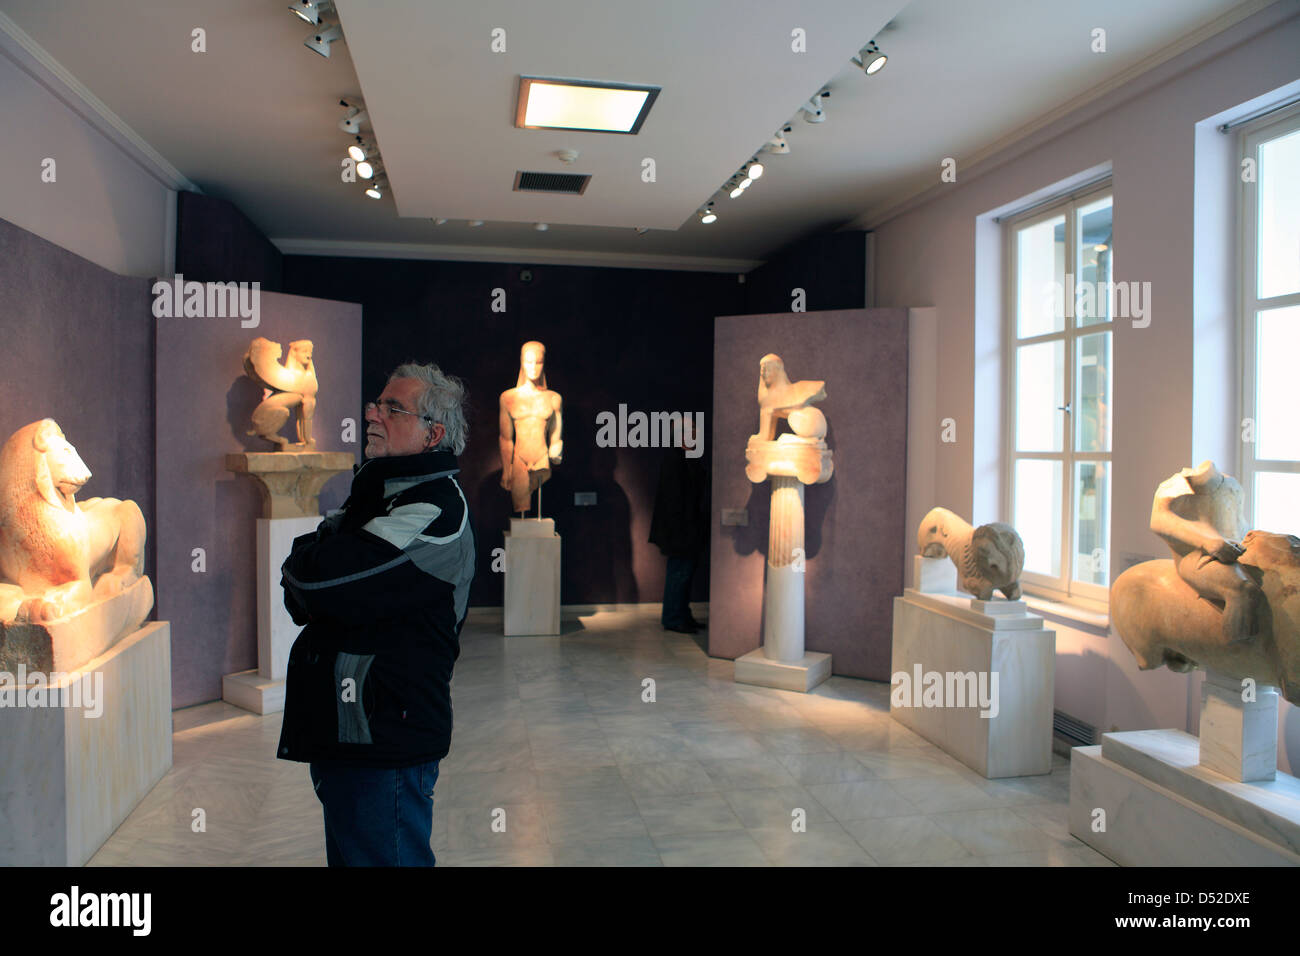 Grecia attika Atenas el museo dentro de las ruinas del kerameikos Foto de stock